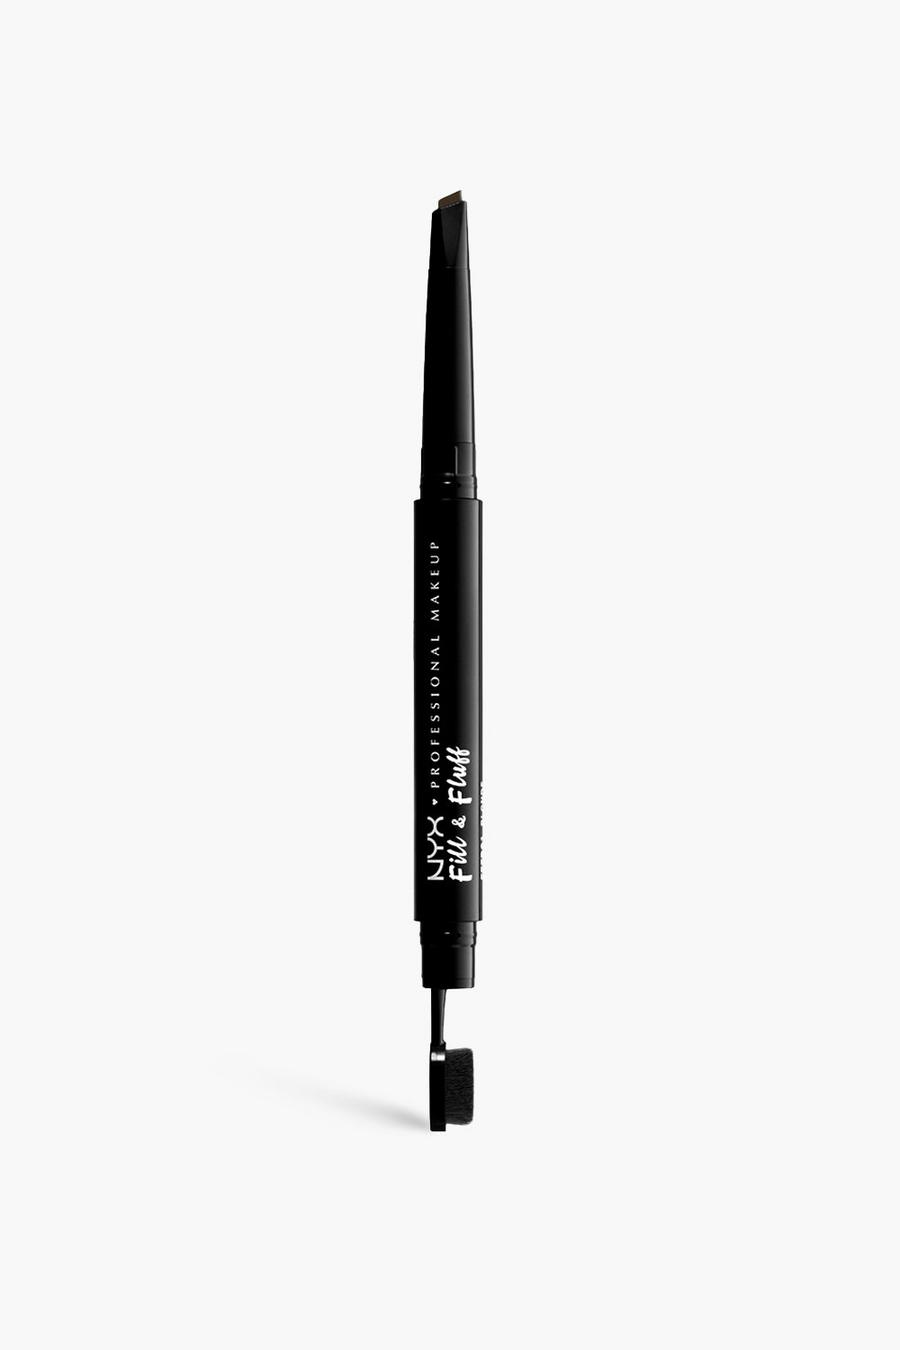 07 אספרסו עיפרון פומייד לגבות Fill & Fluff של NYX Professional Makeup